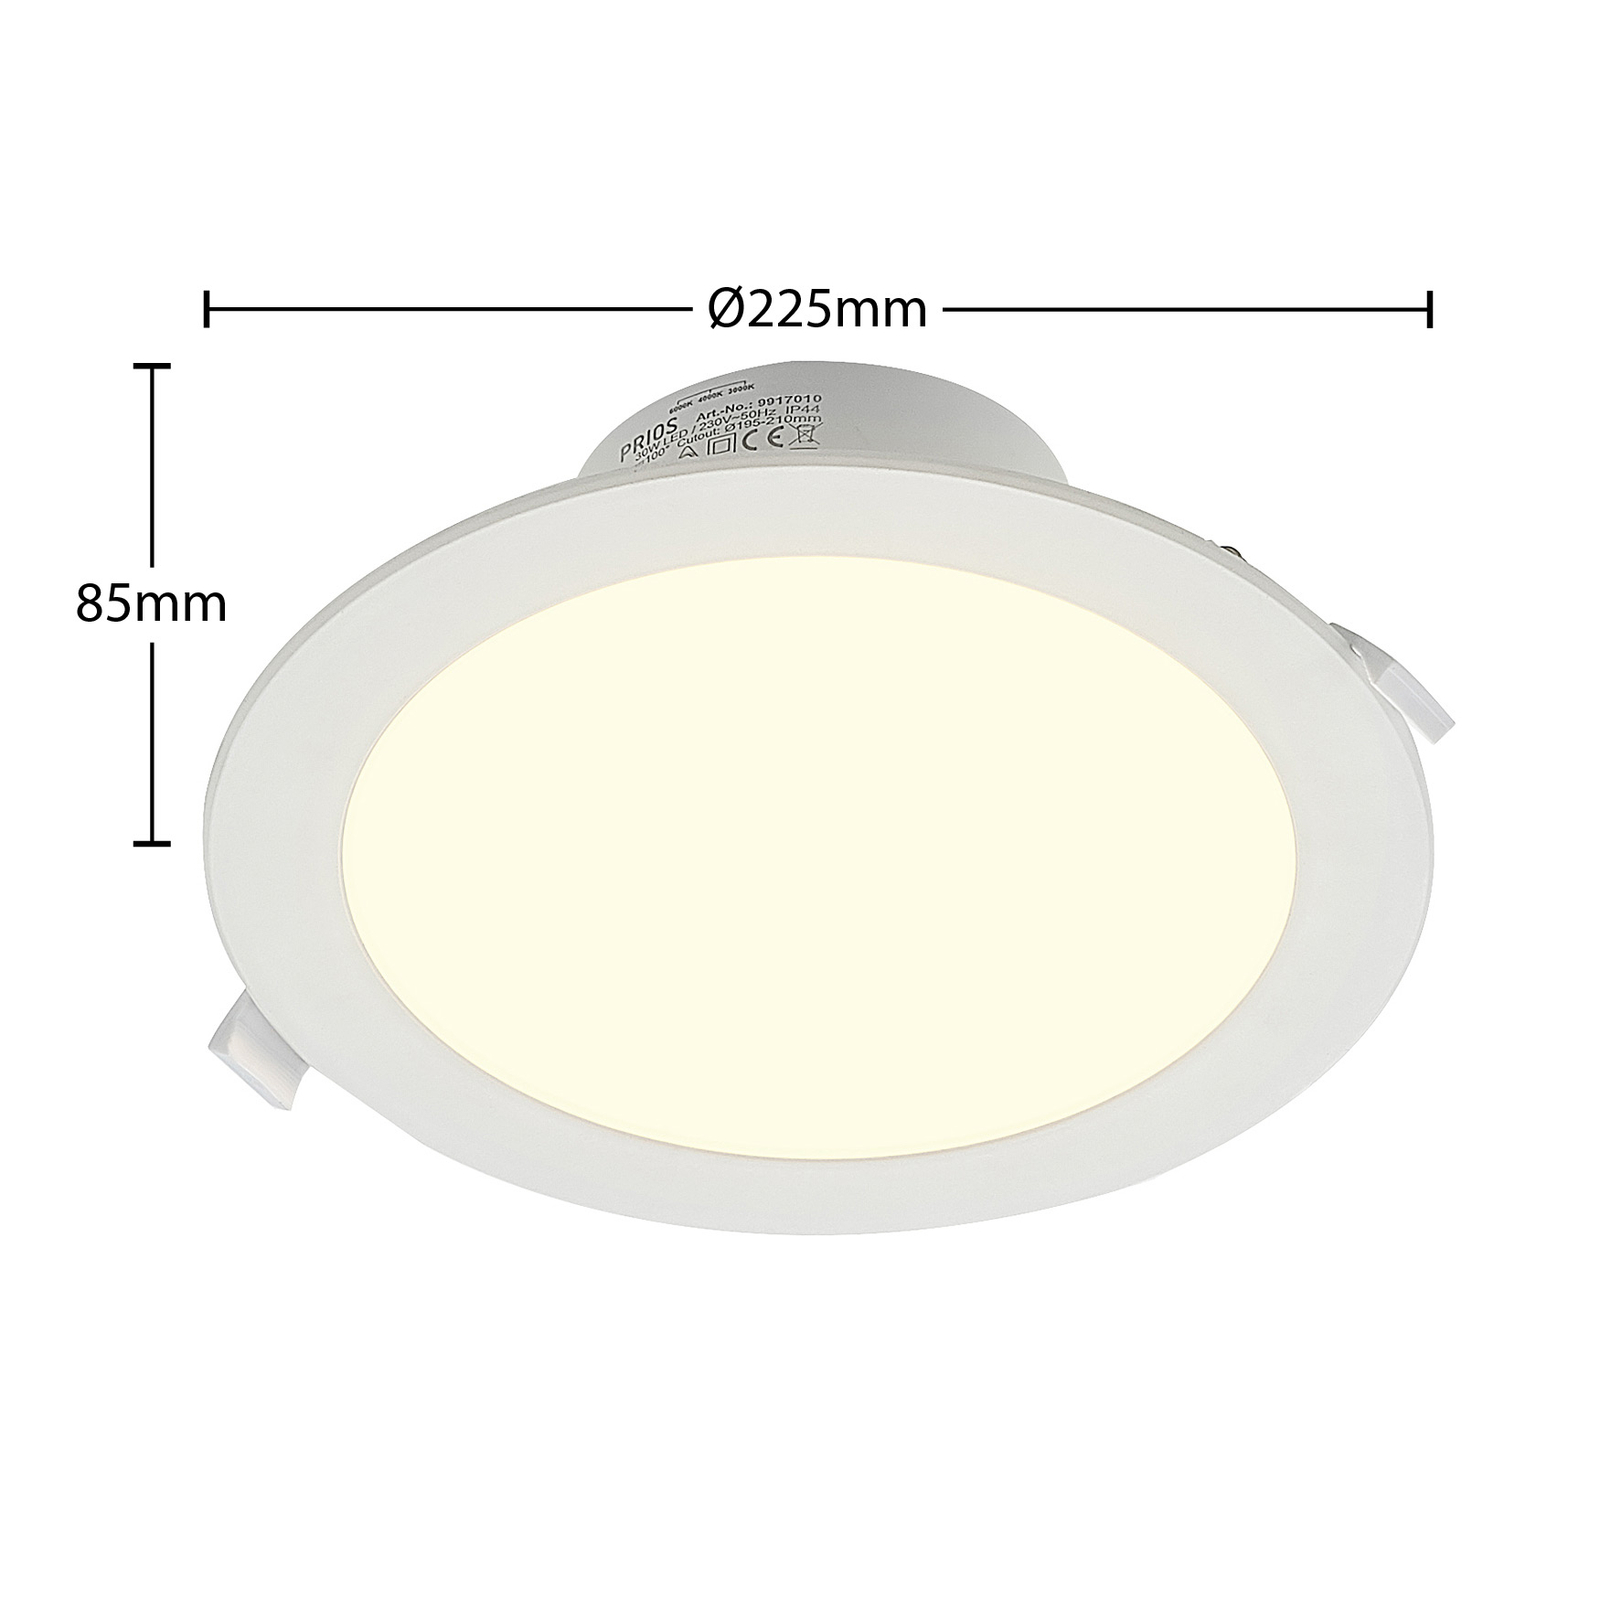 Prios Rida LED-Einbaustrahler, CCT, 22,5 cm, 30 W